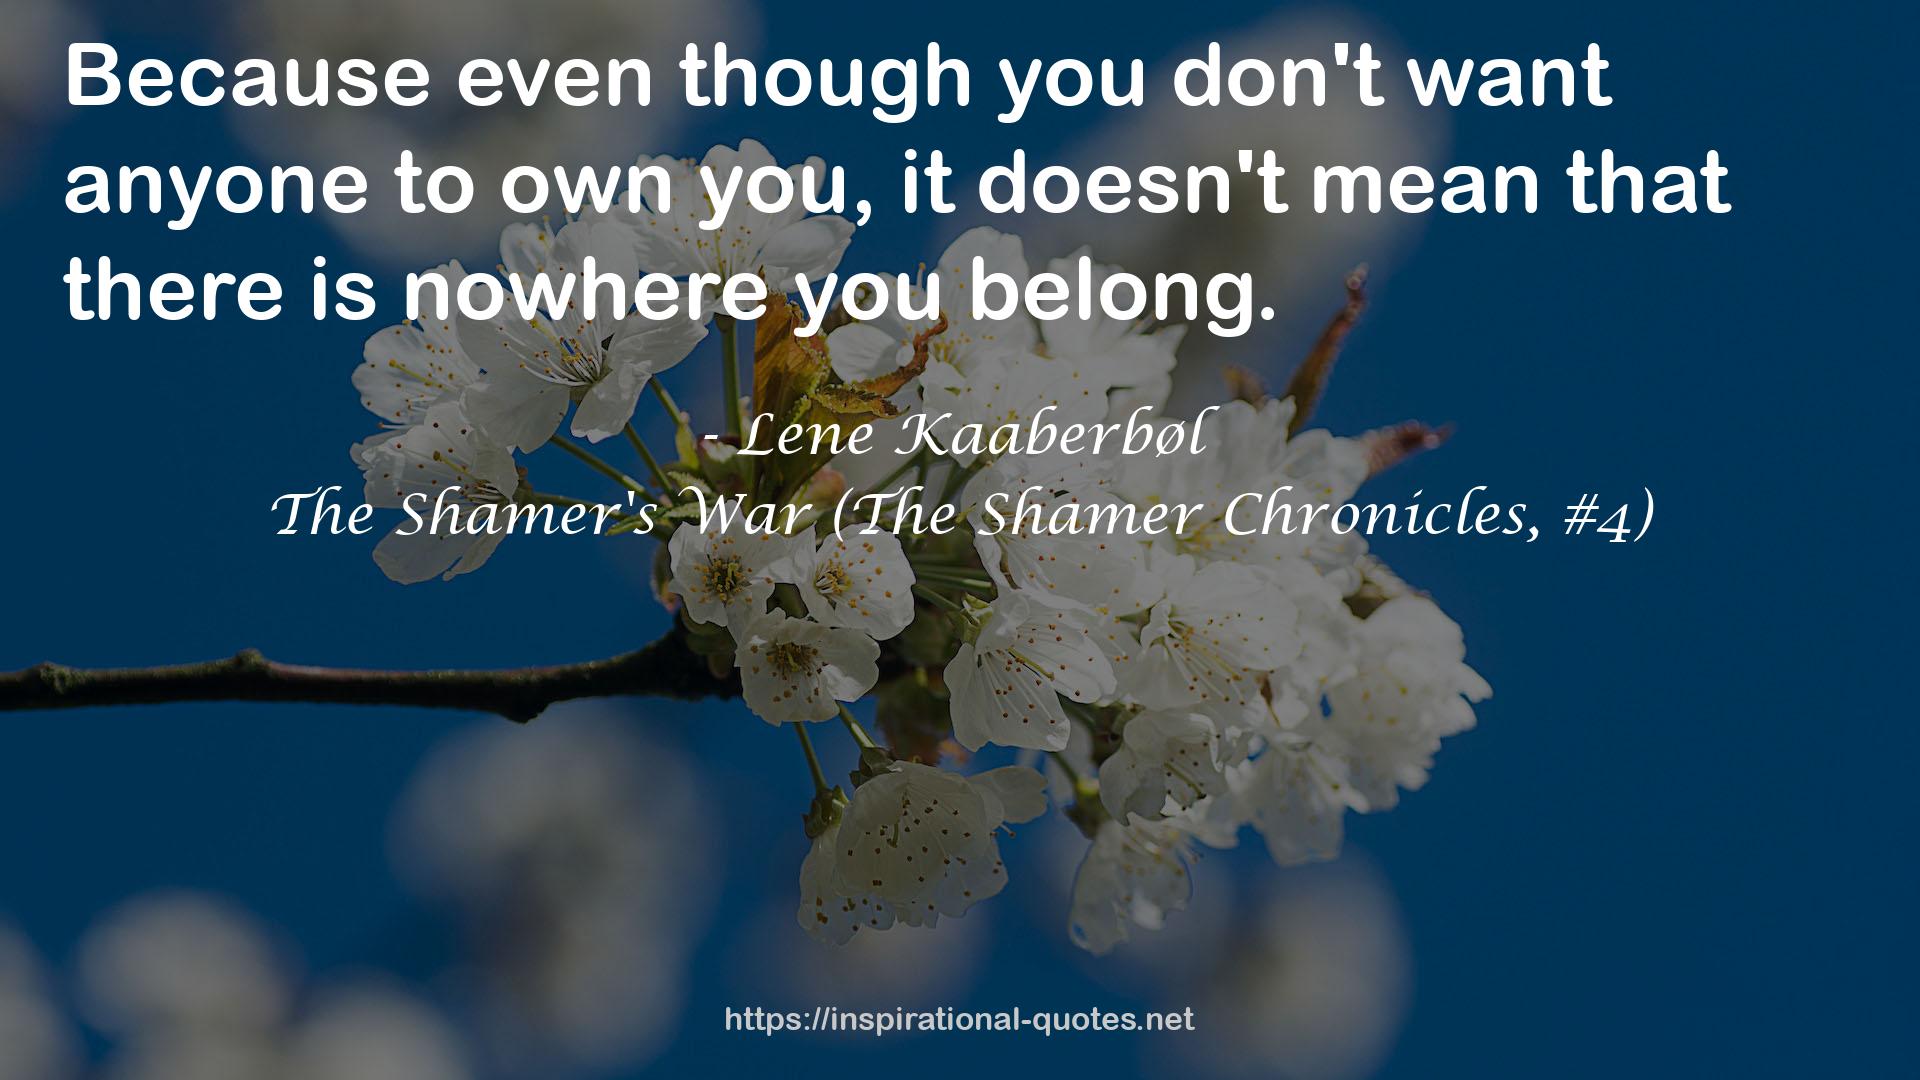 The Shamer's War (The Shamer Chronicles, #4) QUOTES